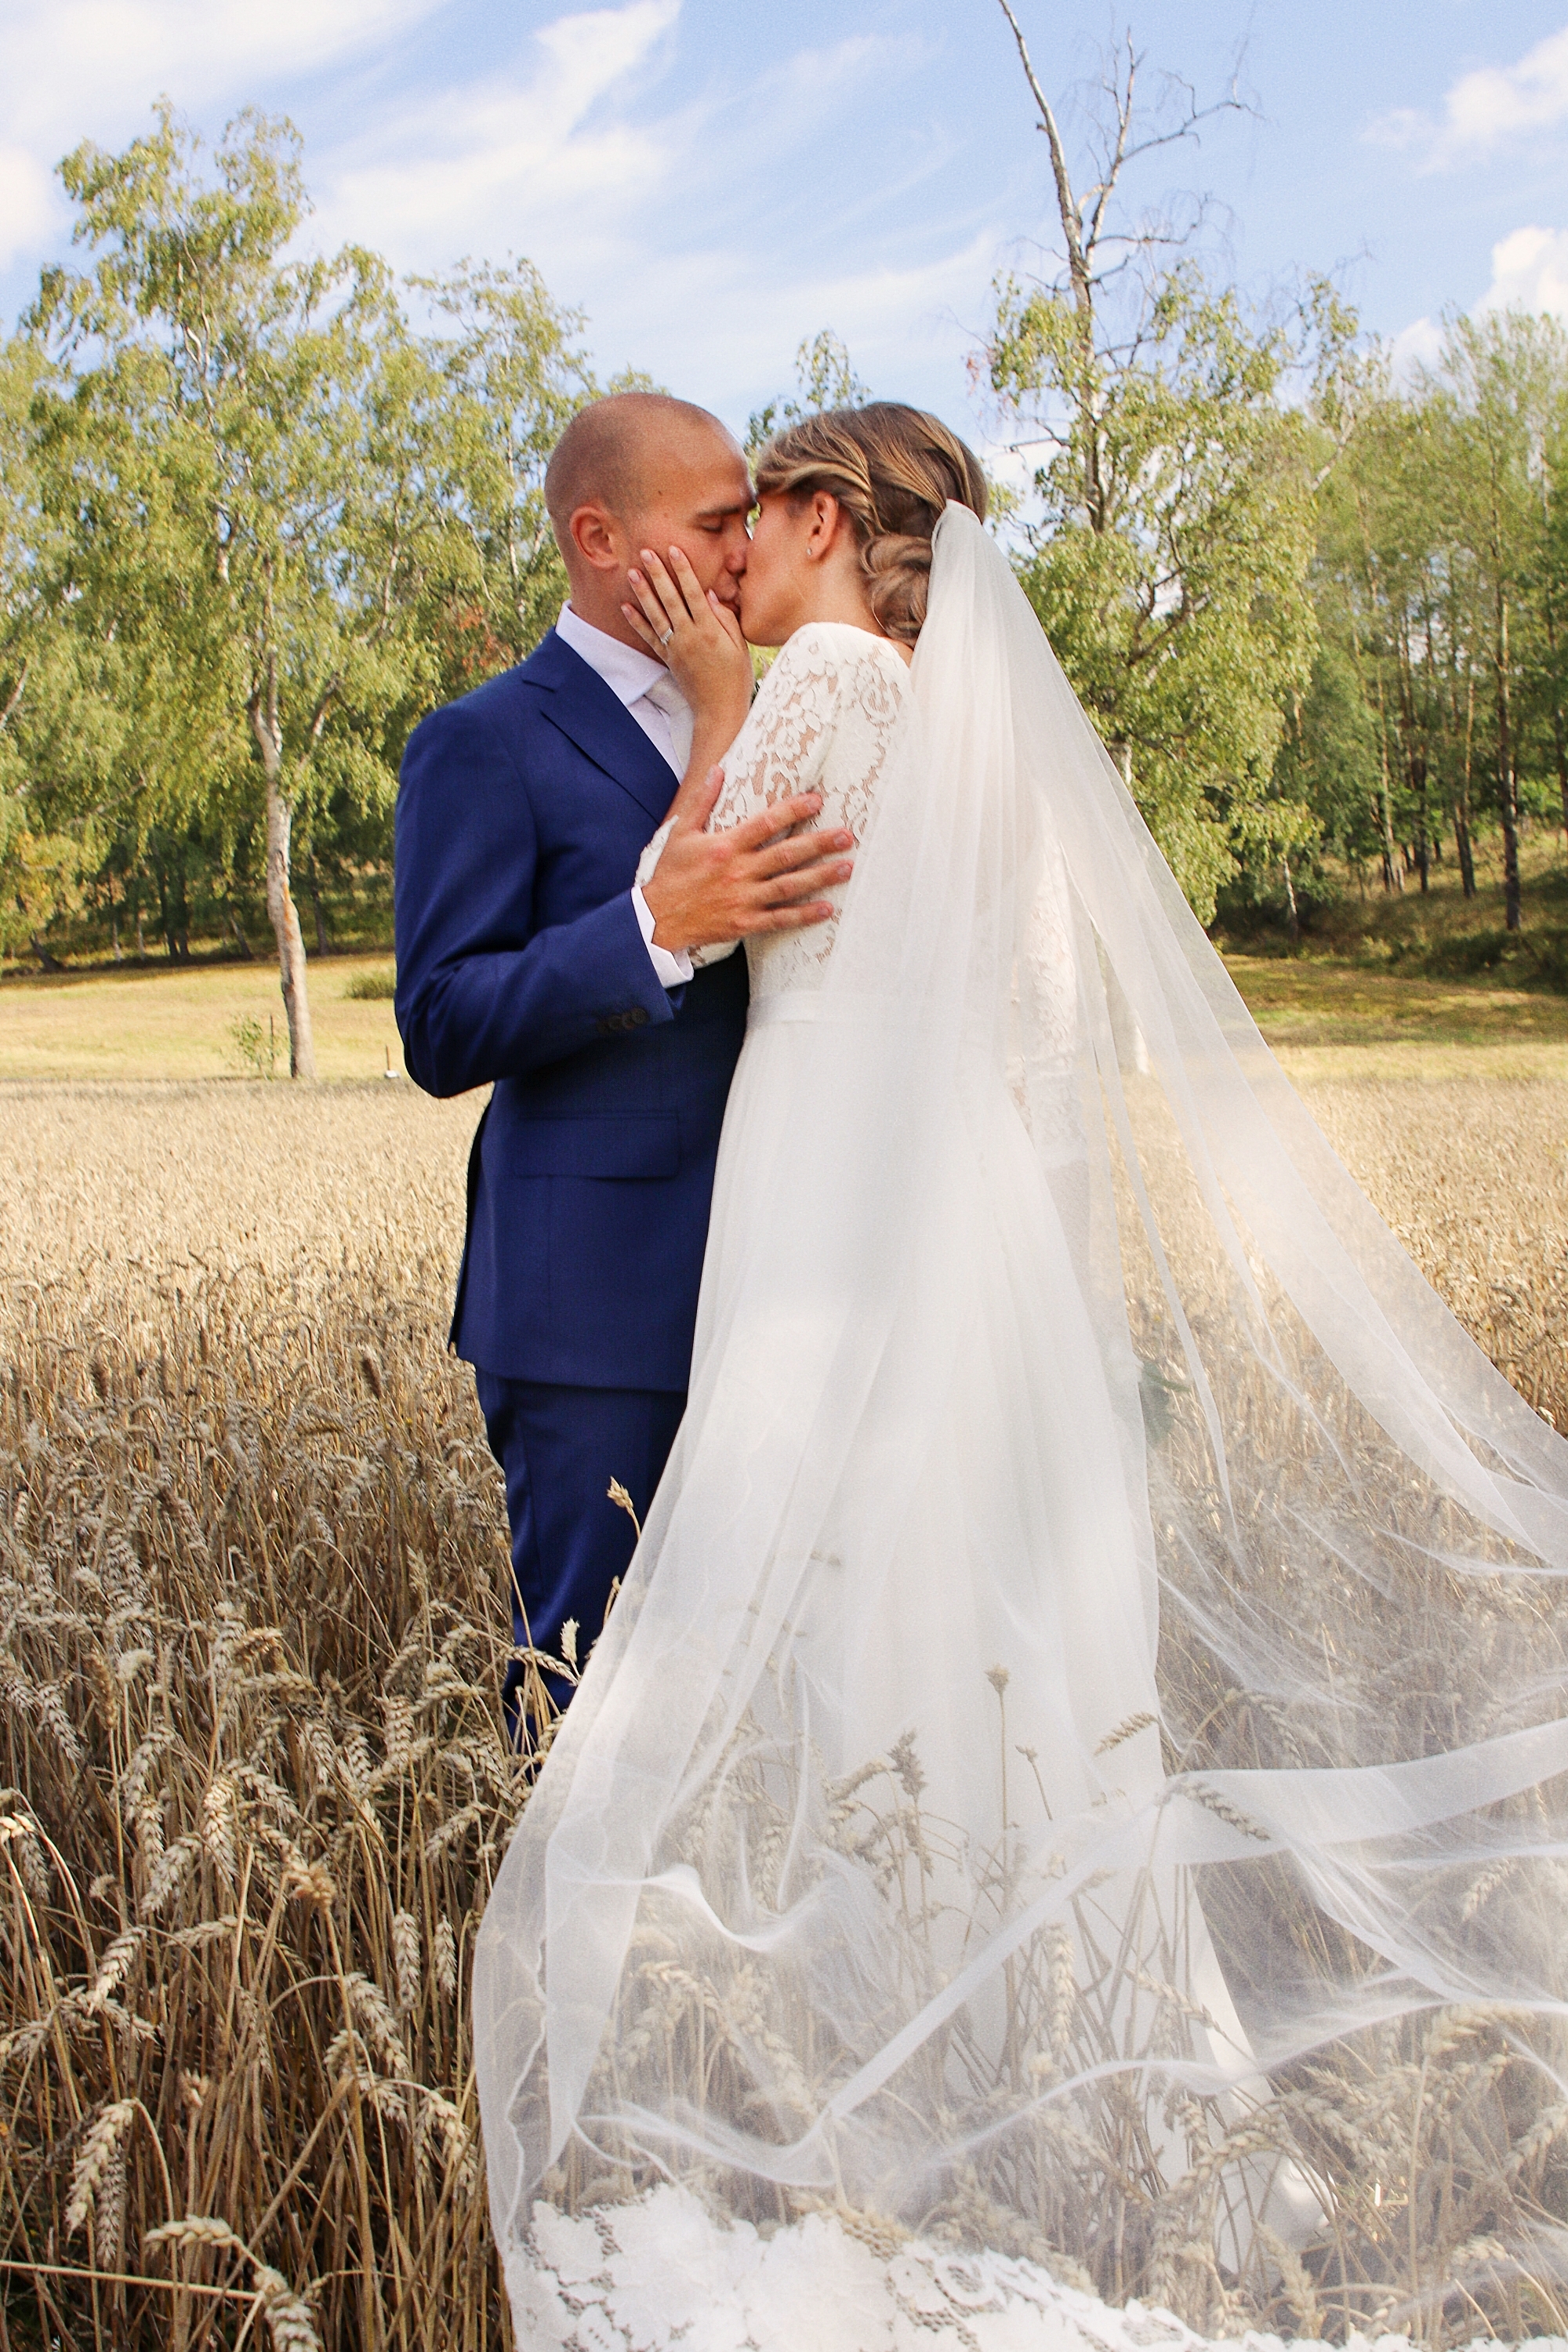 brollop wedding foto photo brud brudgum lantligt skandinaviskt